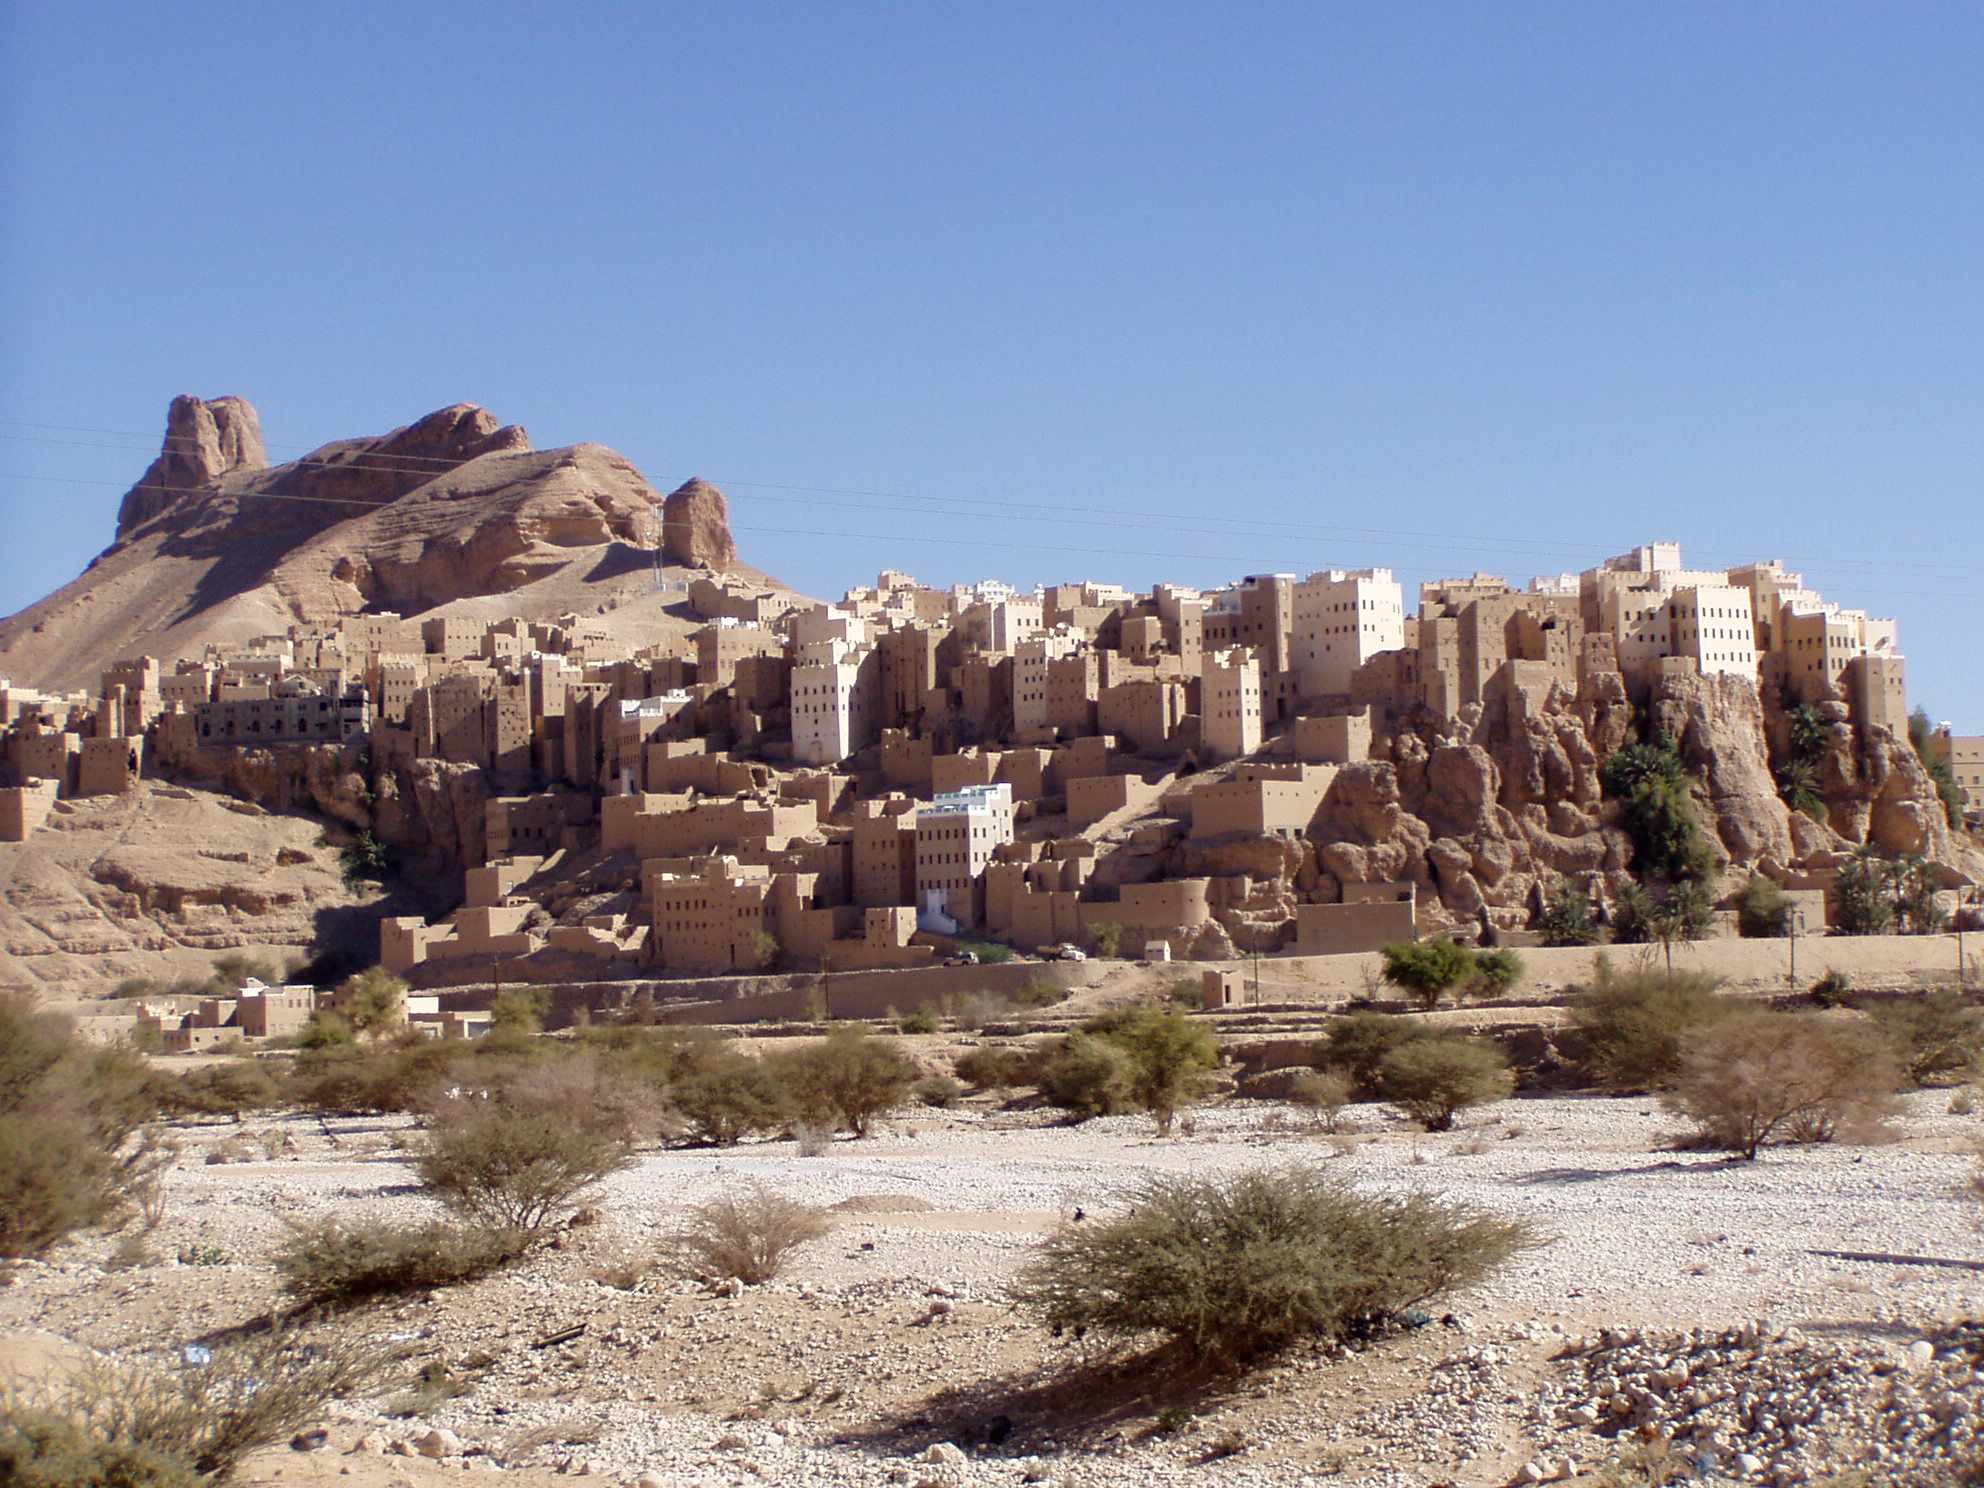 Neįtikėtinas kaimas Jemene, pastatytas ant 150 metrų aukščio milžiniško uolų bloko 2